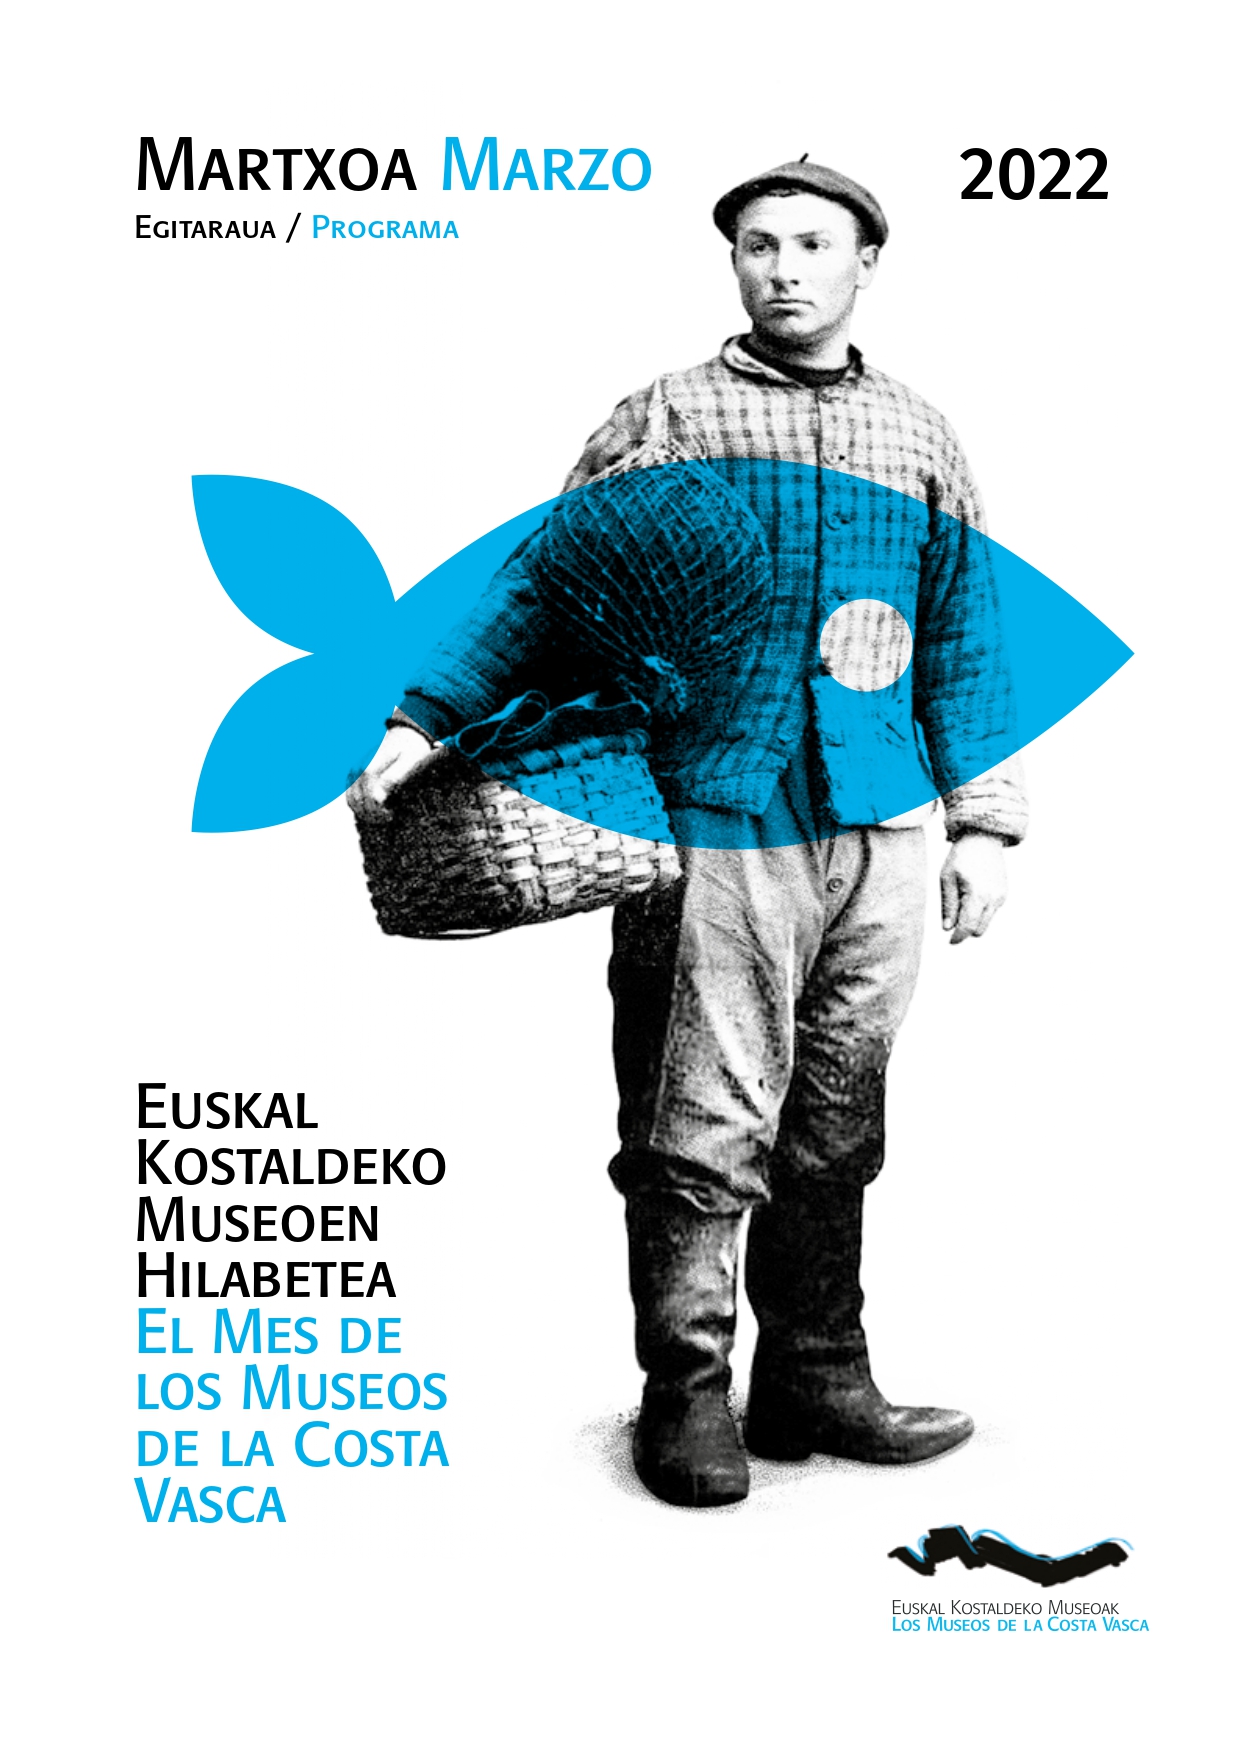 El mes de los museos de la costa vasca se celebrará en marzo con más de 50 actividades